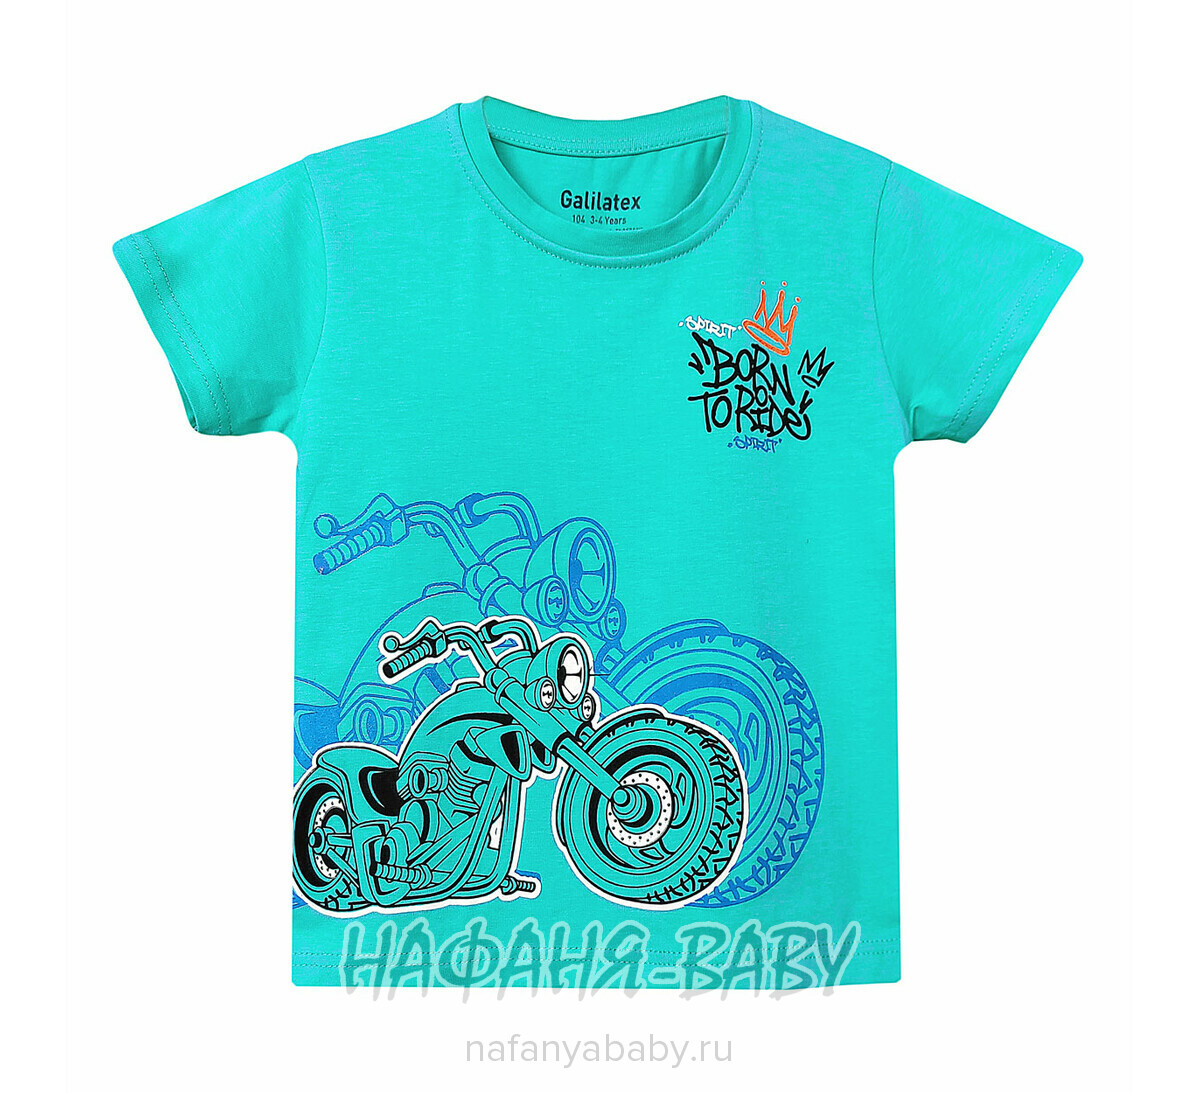 Детская футболка Galilatex арт. 8186, 4-8 лет, цвет бирюзовый, оптом Турция